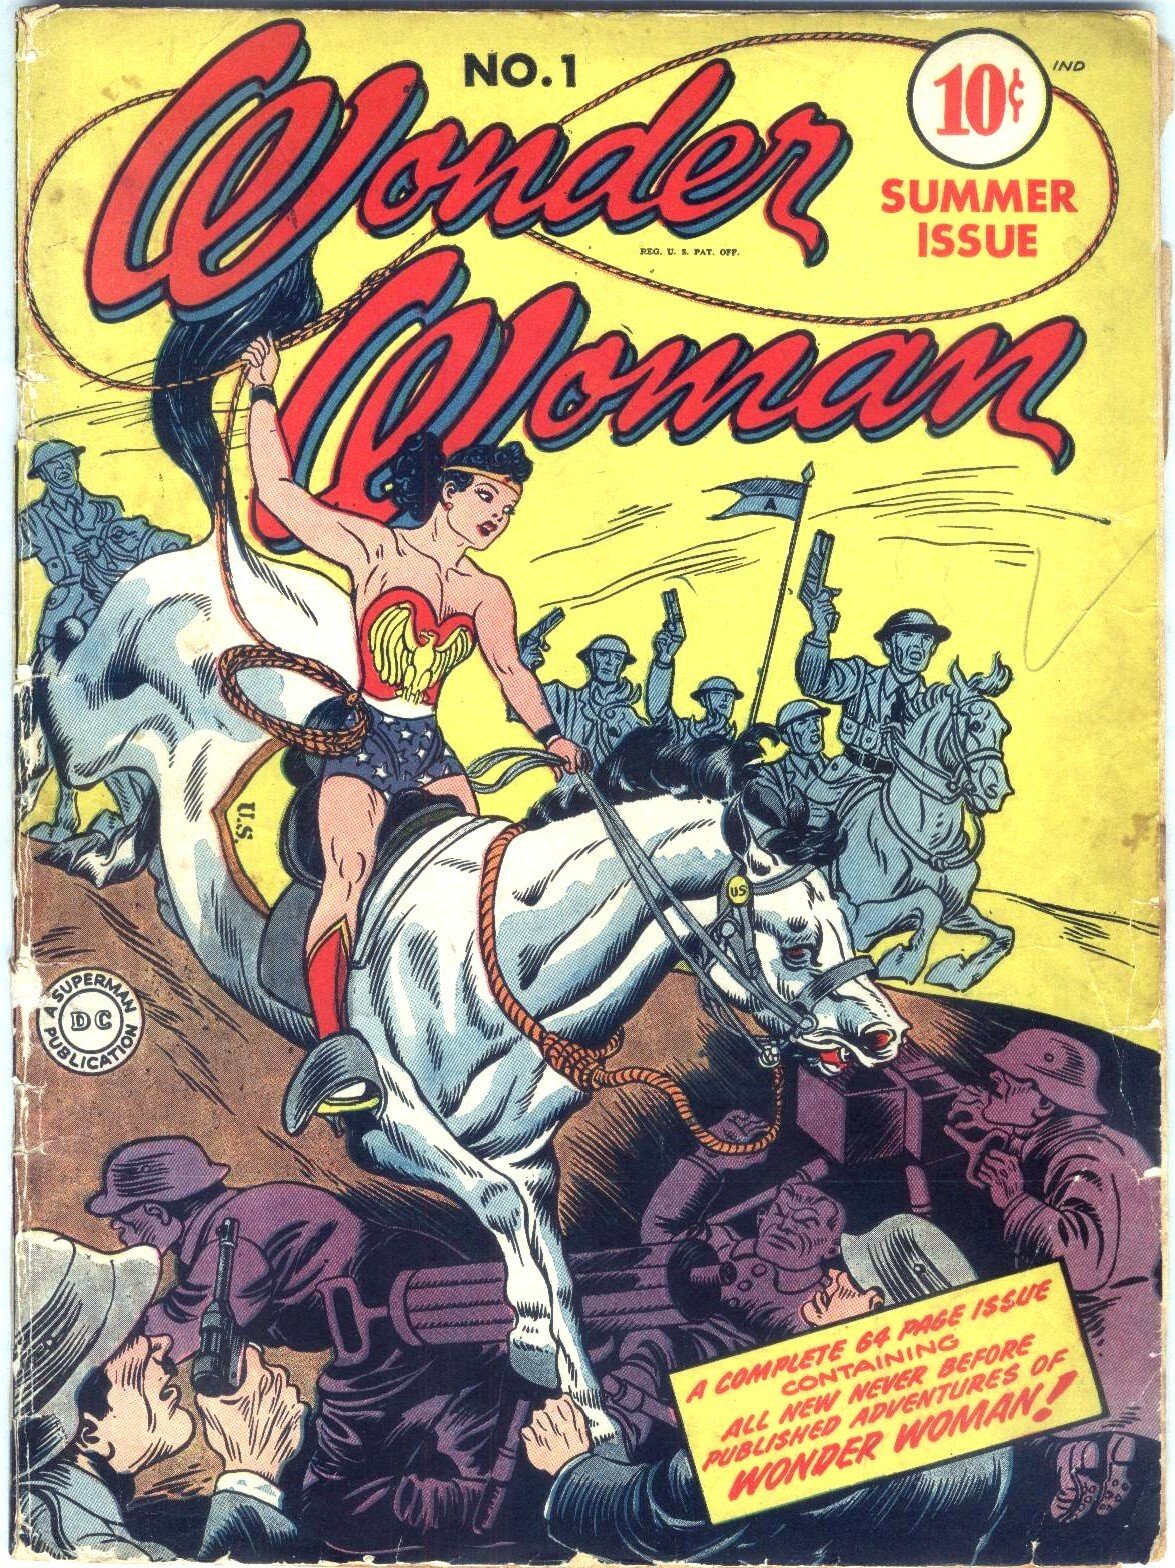 Il primo fumetto di Wonder Woman